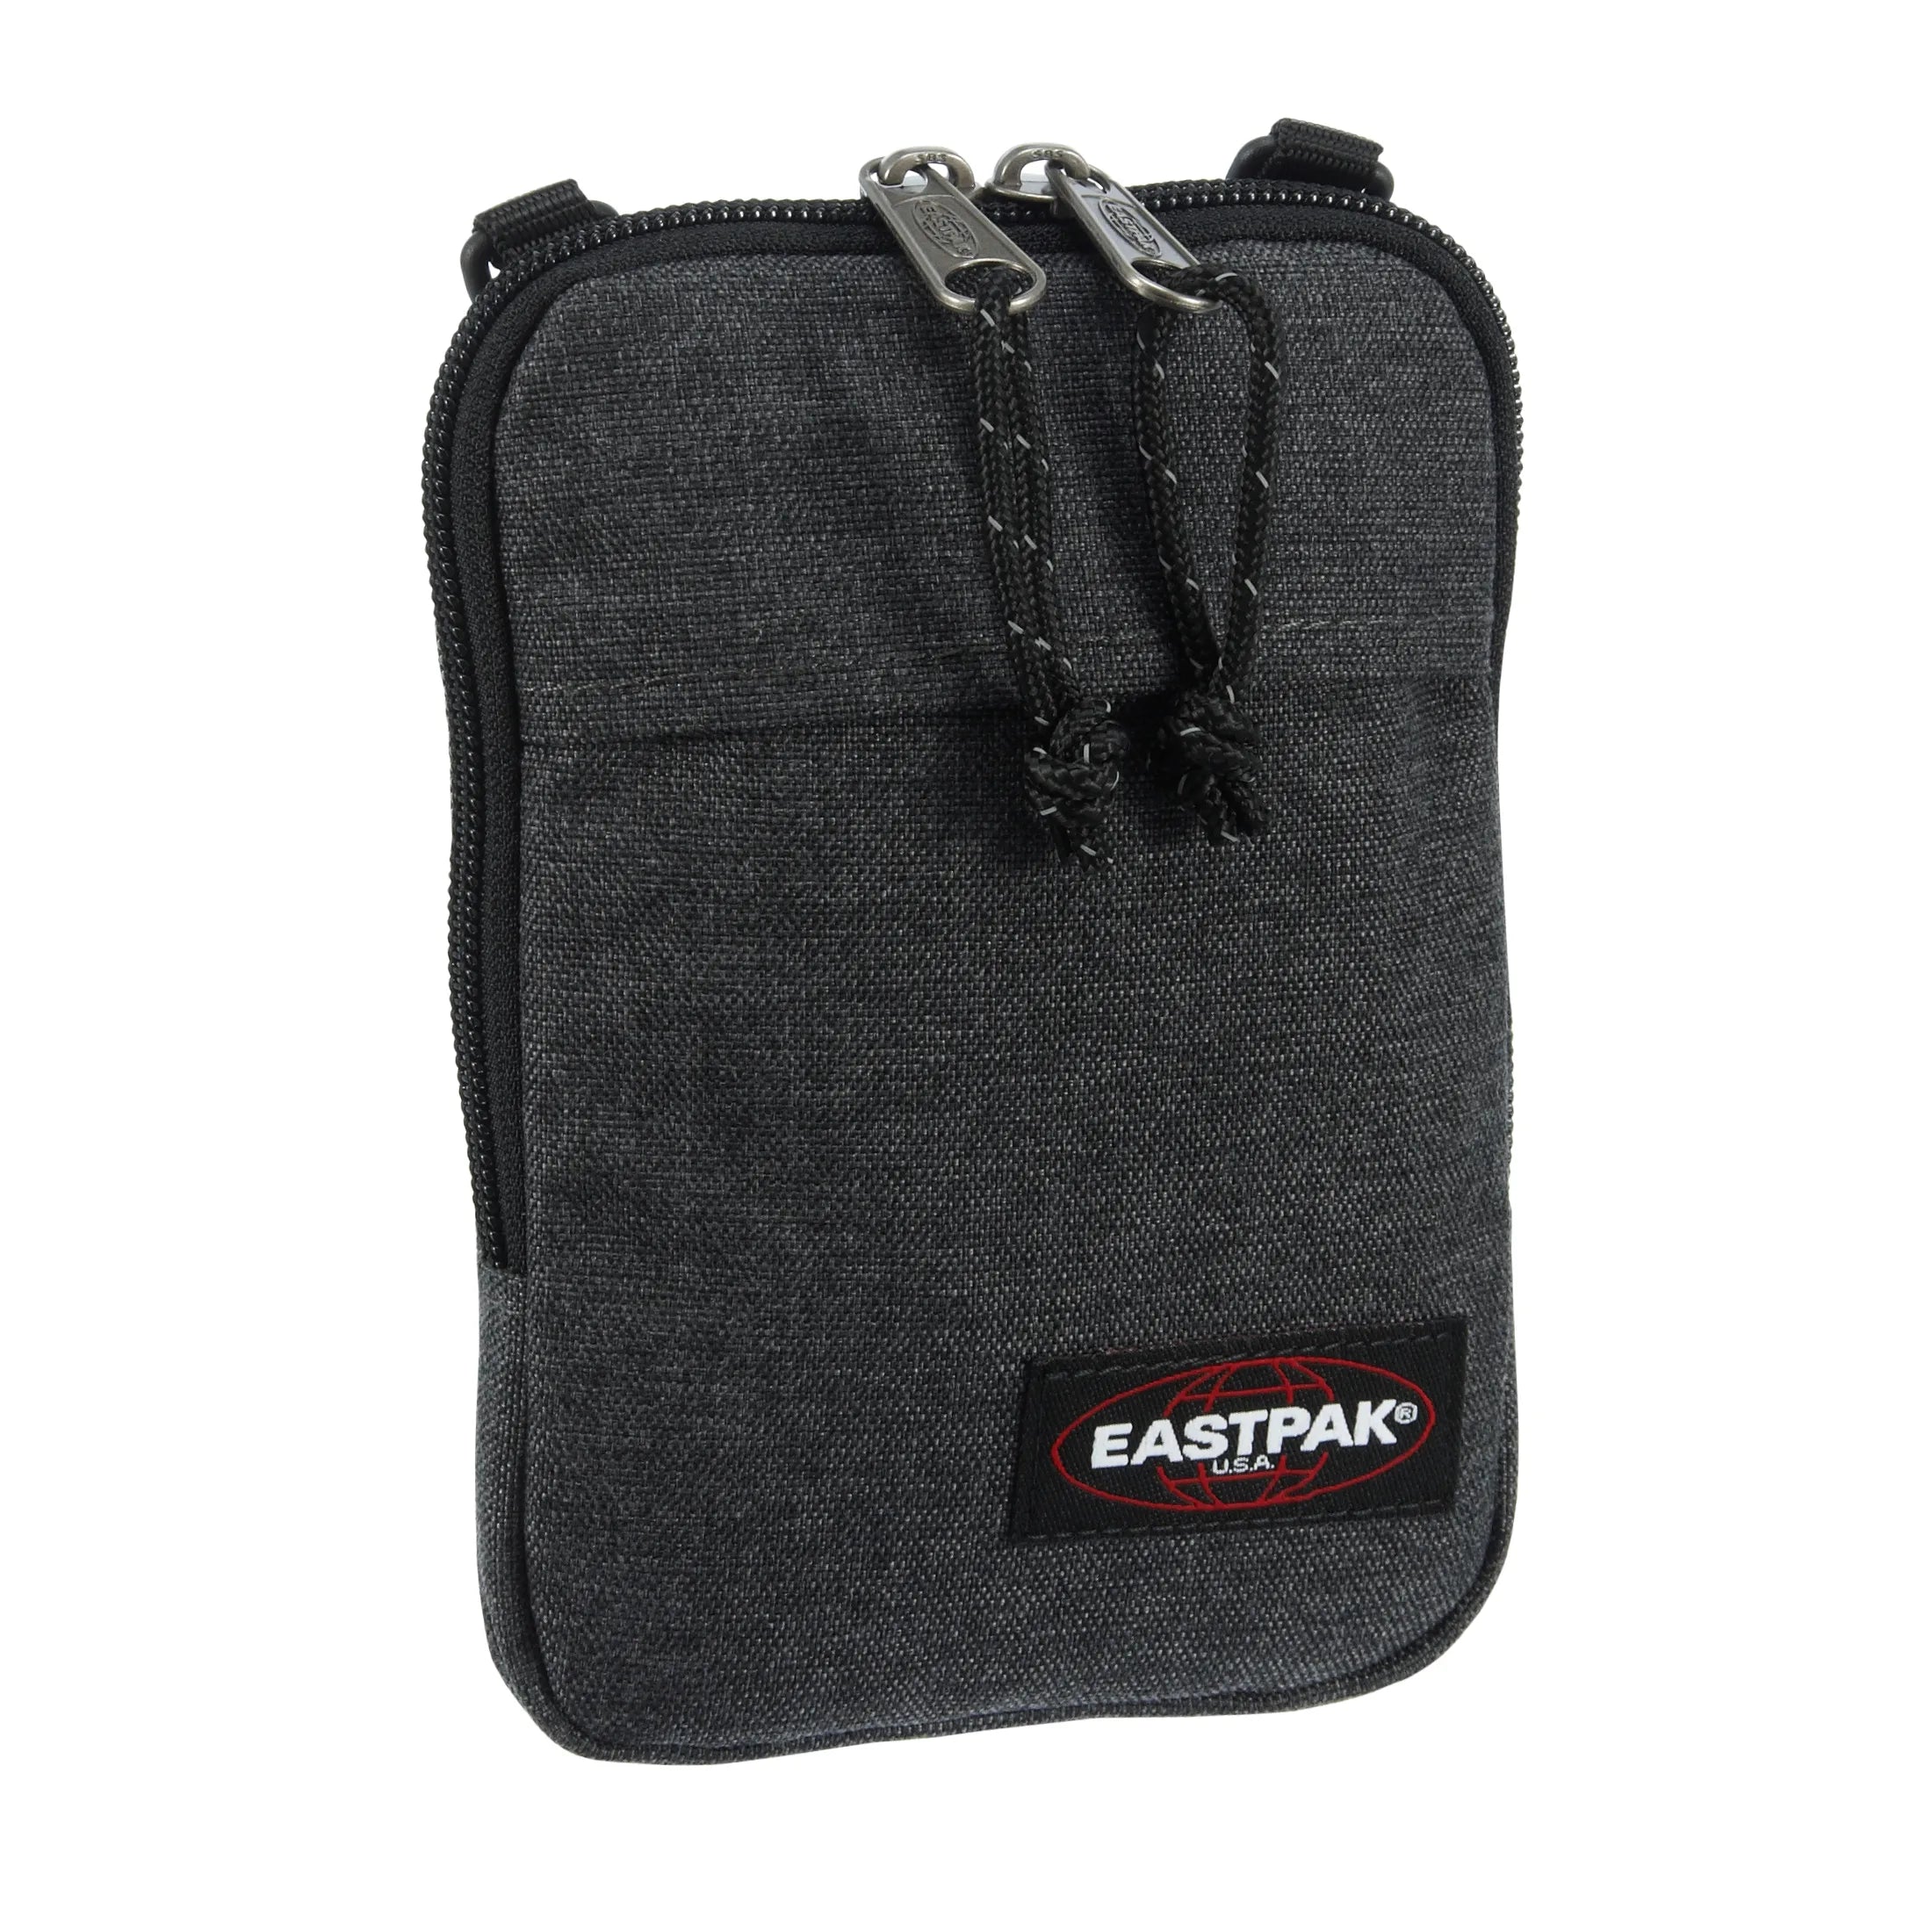 Eastpak Authentic Buddy Jugendtasche 18 cm - black denim